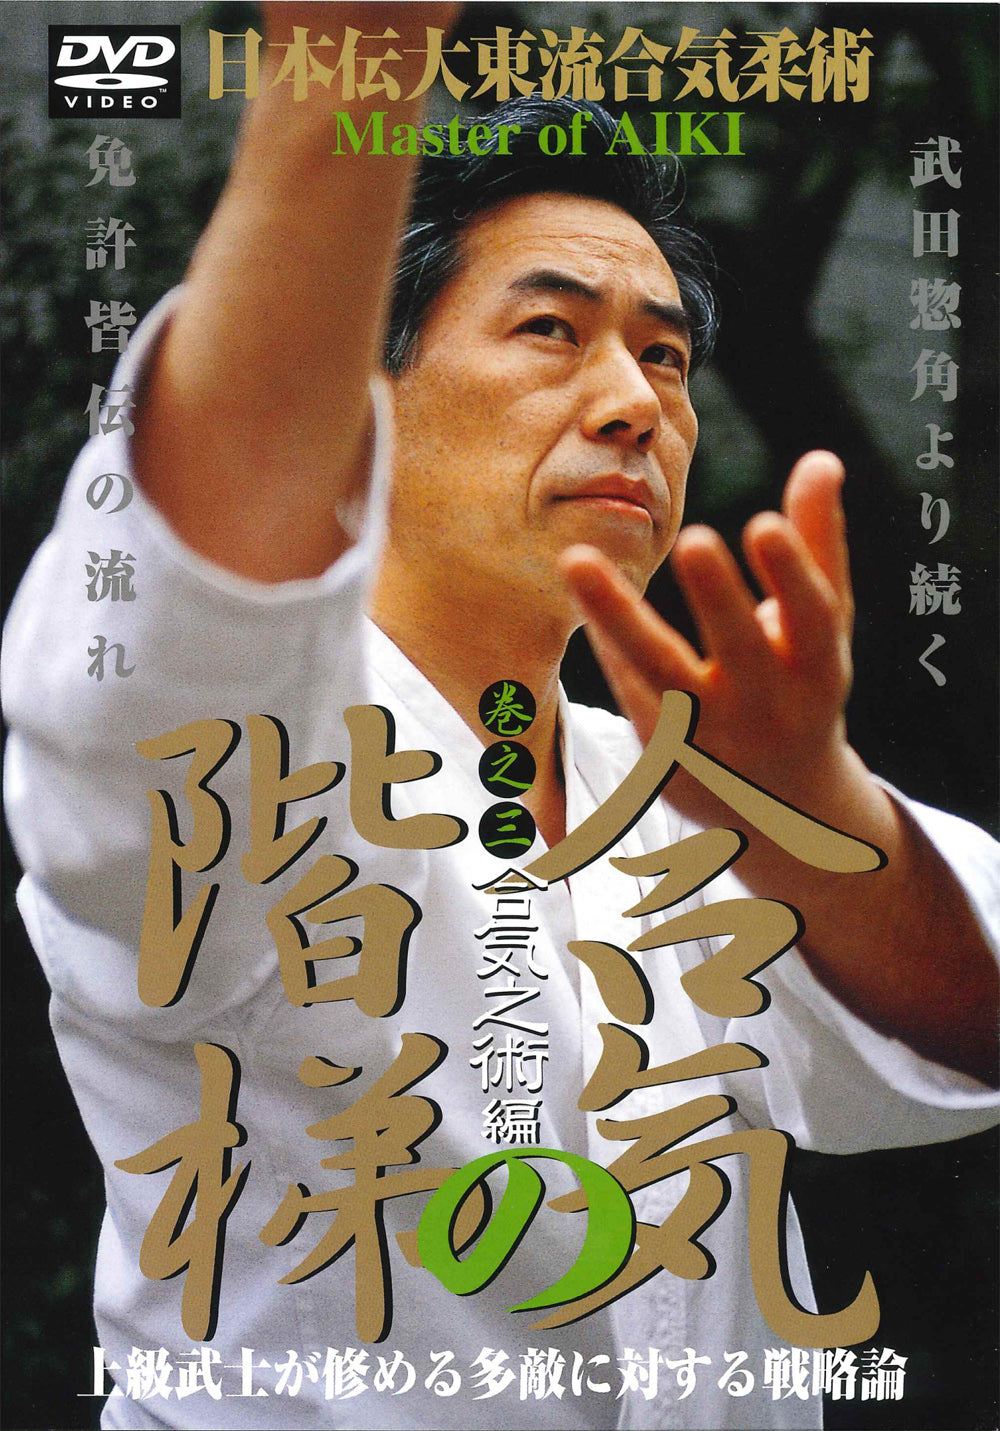 Master of Aiki DVD 3 by Kogen Sugasawa